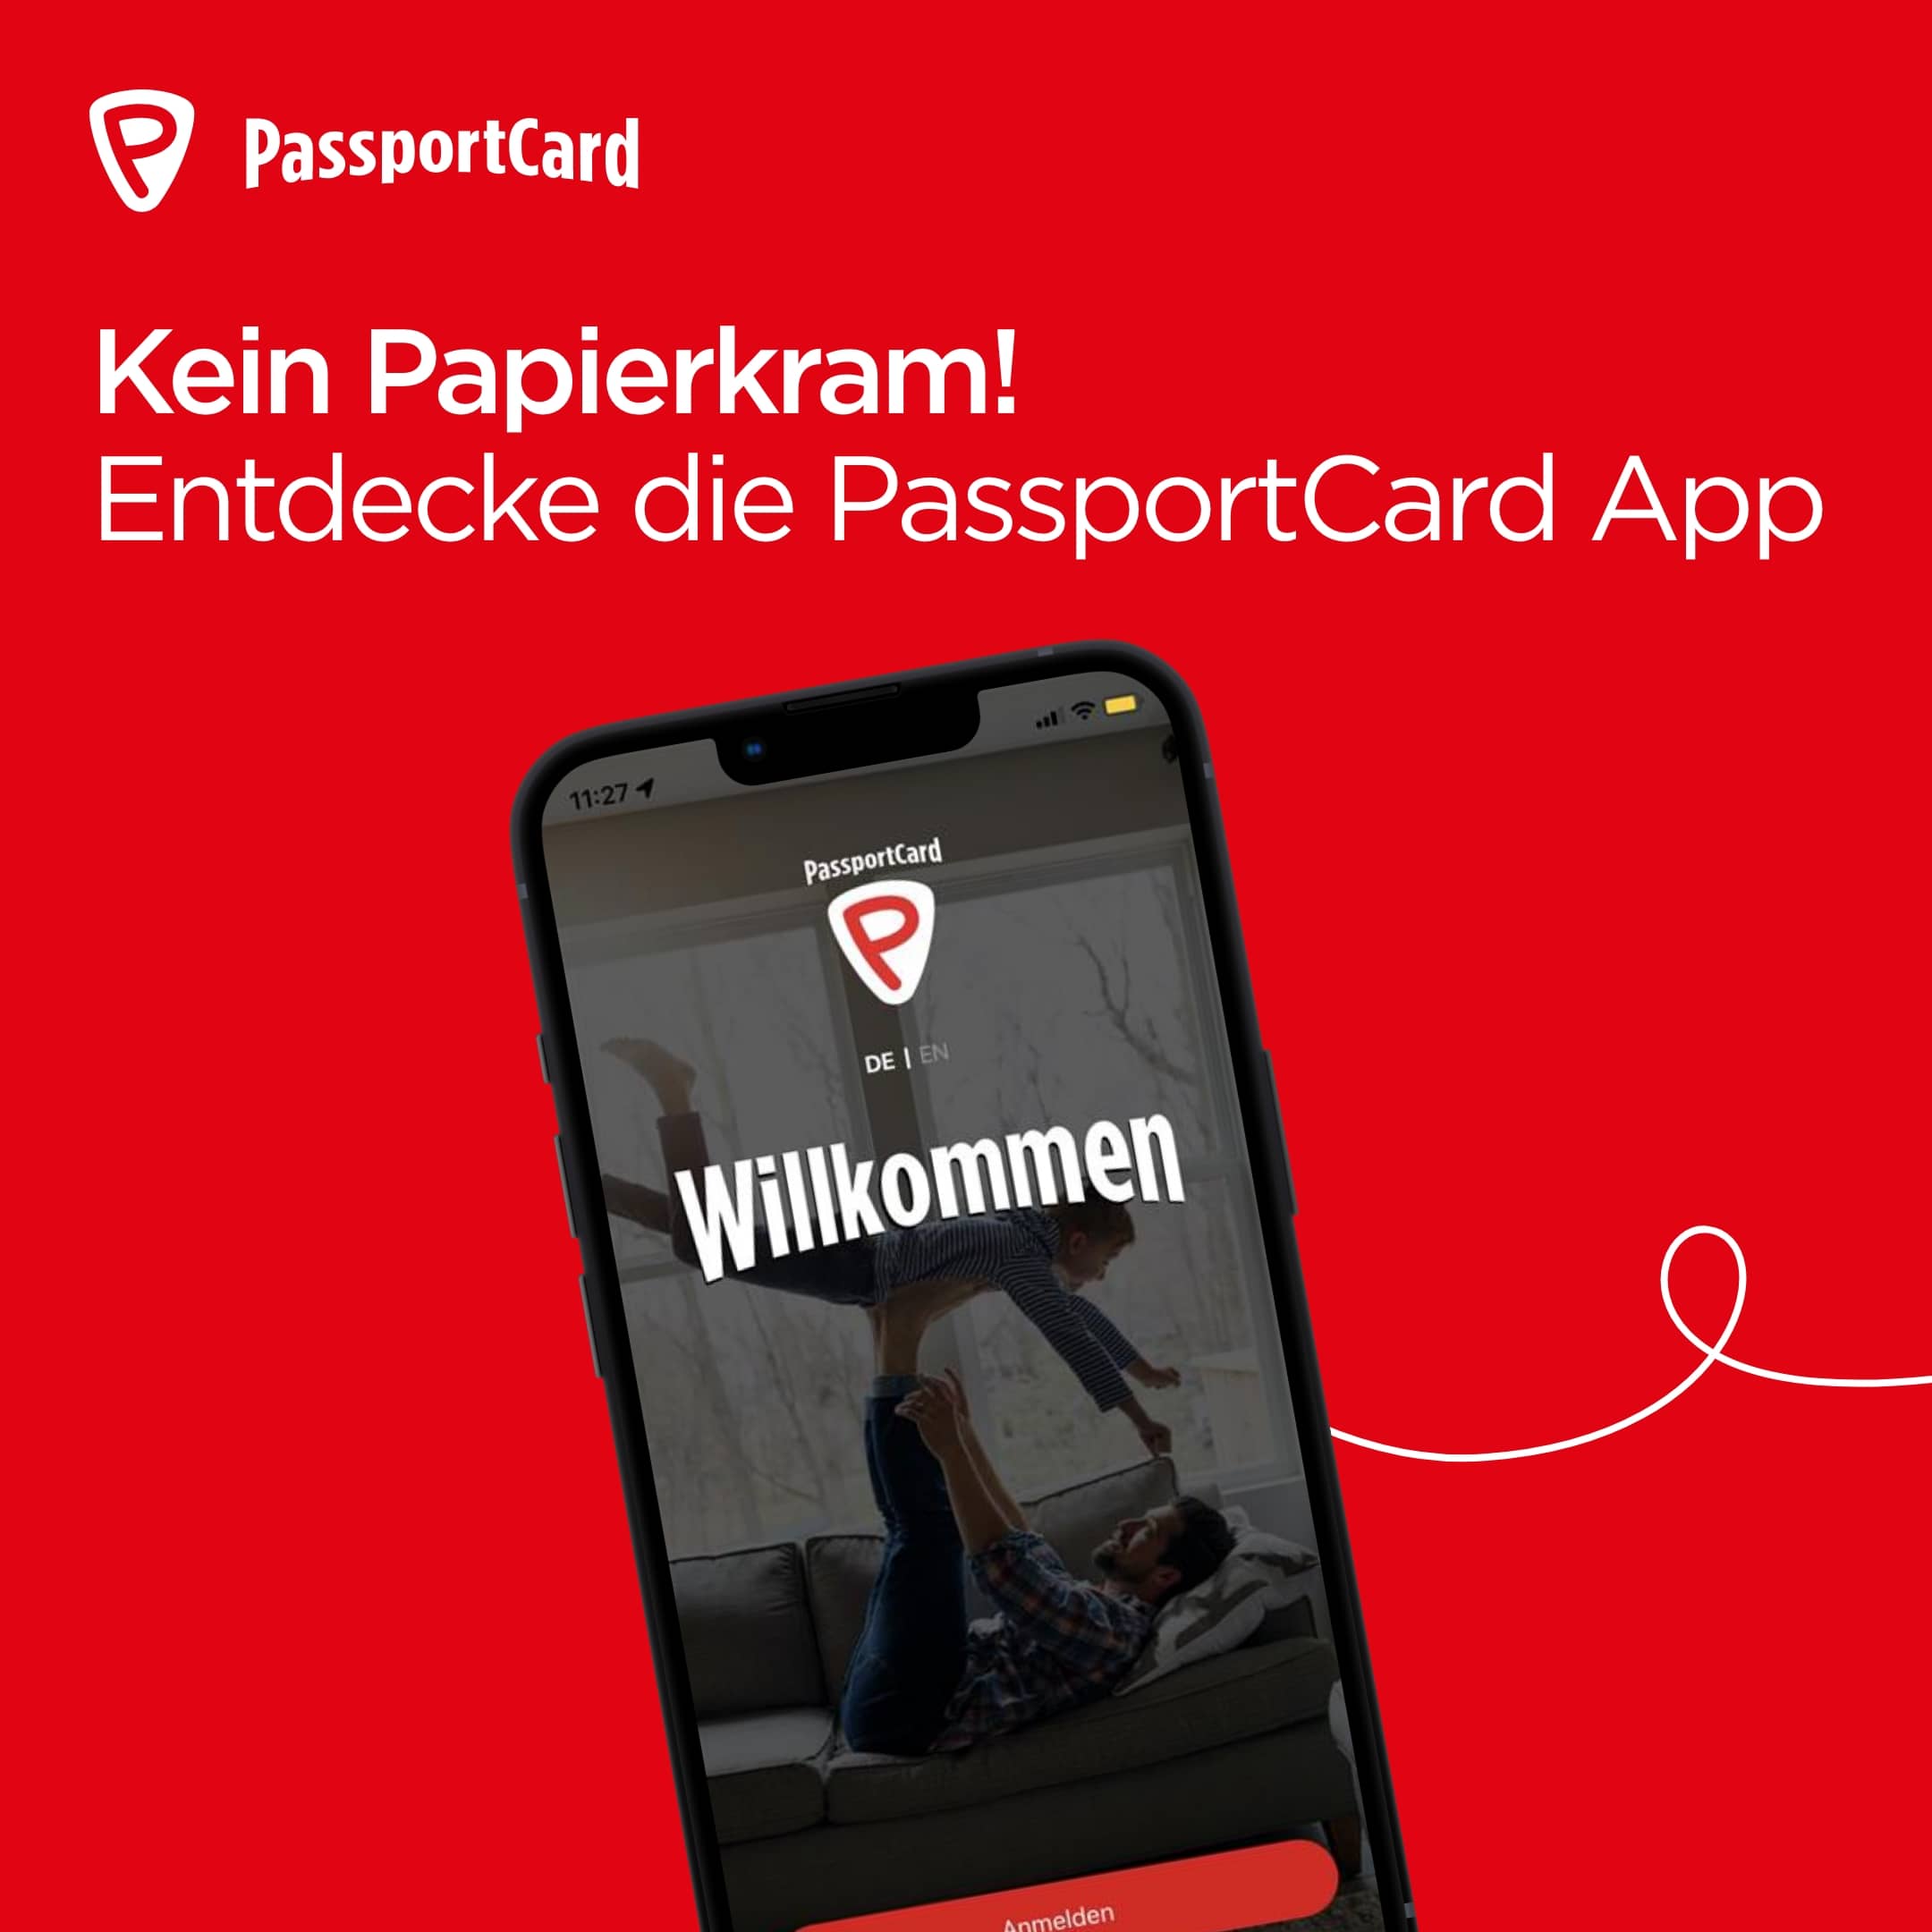 PassportCard/Internationale Krankenversicherung/instagram-post-app-1